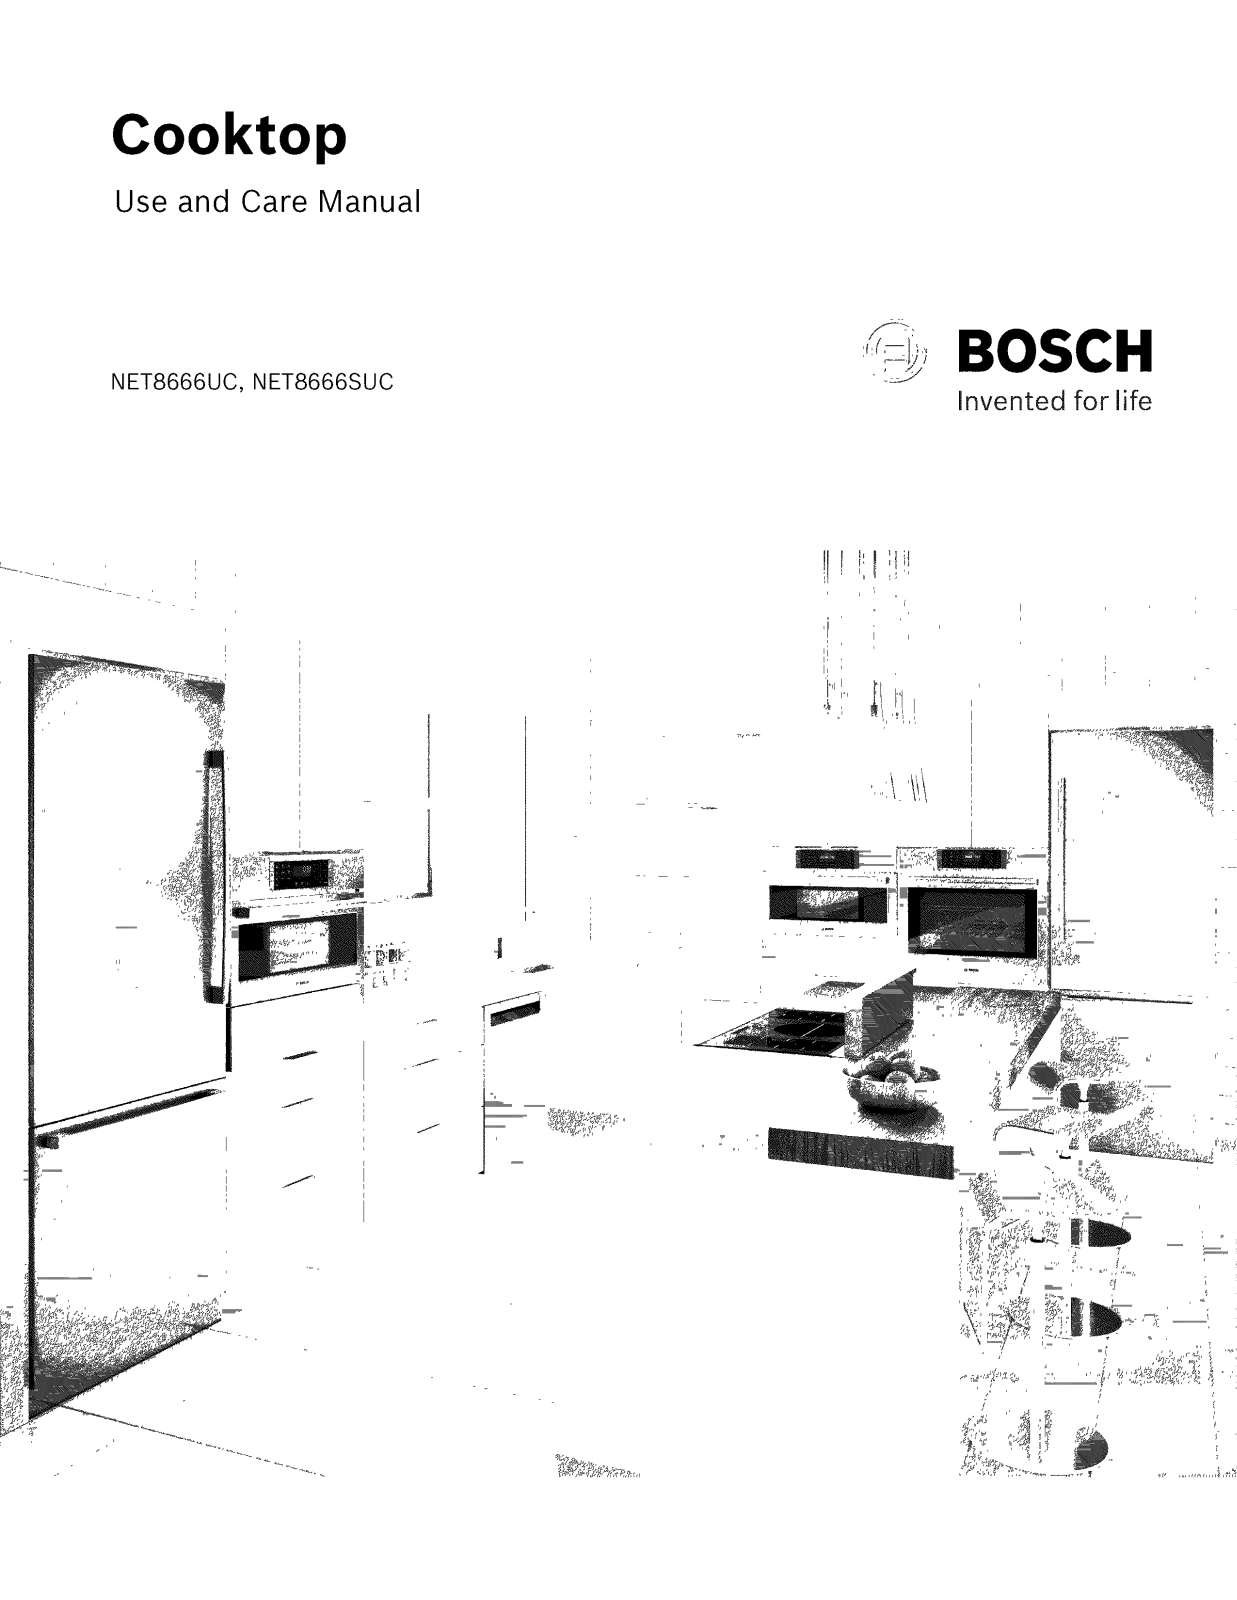 Bosch NET8666UC/01, NET8666SUC/01 Owner’s Manual